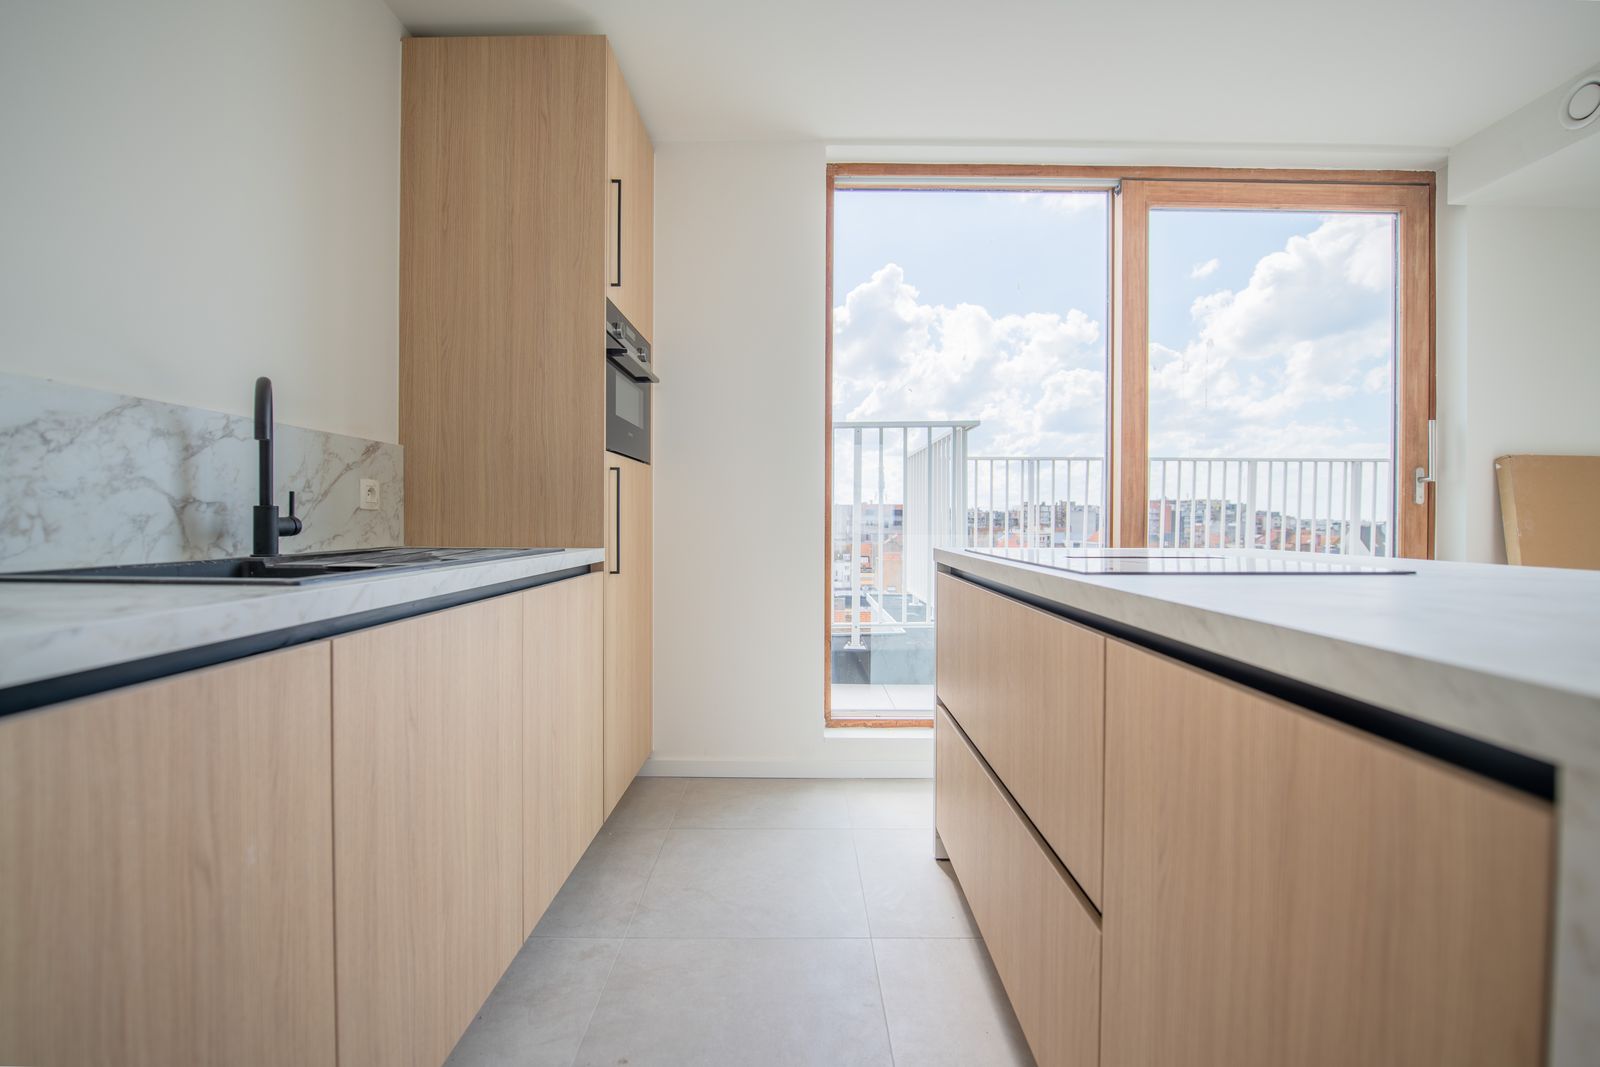 Nieuwbouw penthouse appartement met zonnige terrassen in hartje Oostende foto 4